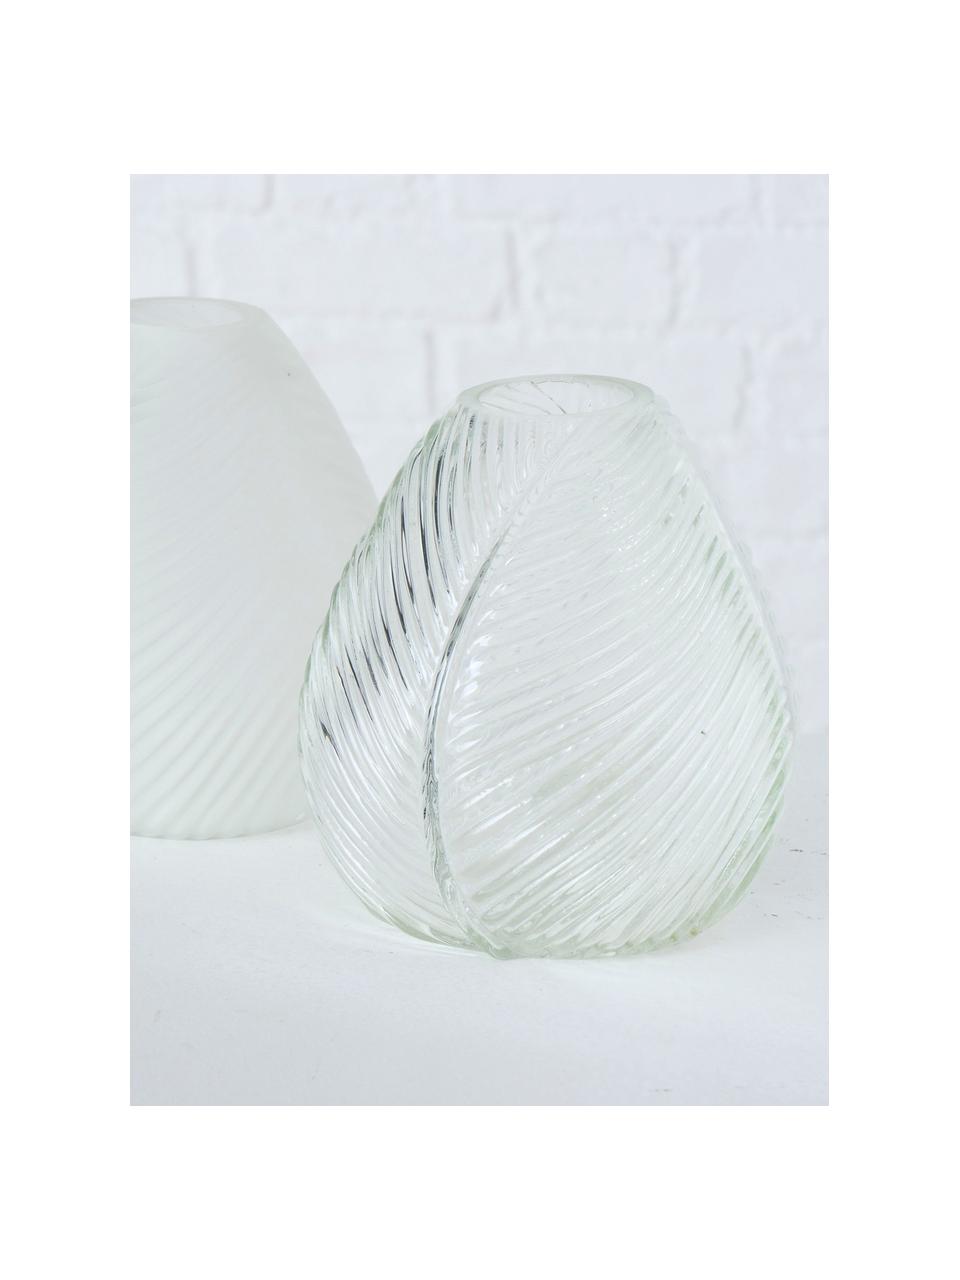 Glasvasen-Set Lewin, 2-tlg., Glas, Weiss, Transparent, Ø 14 x H 15 cm